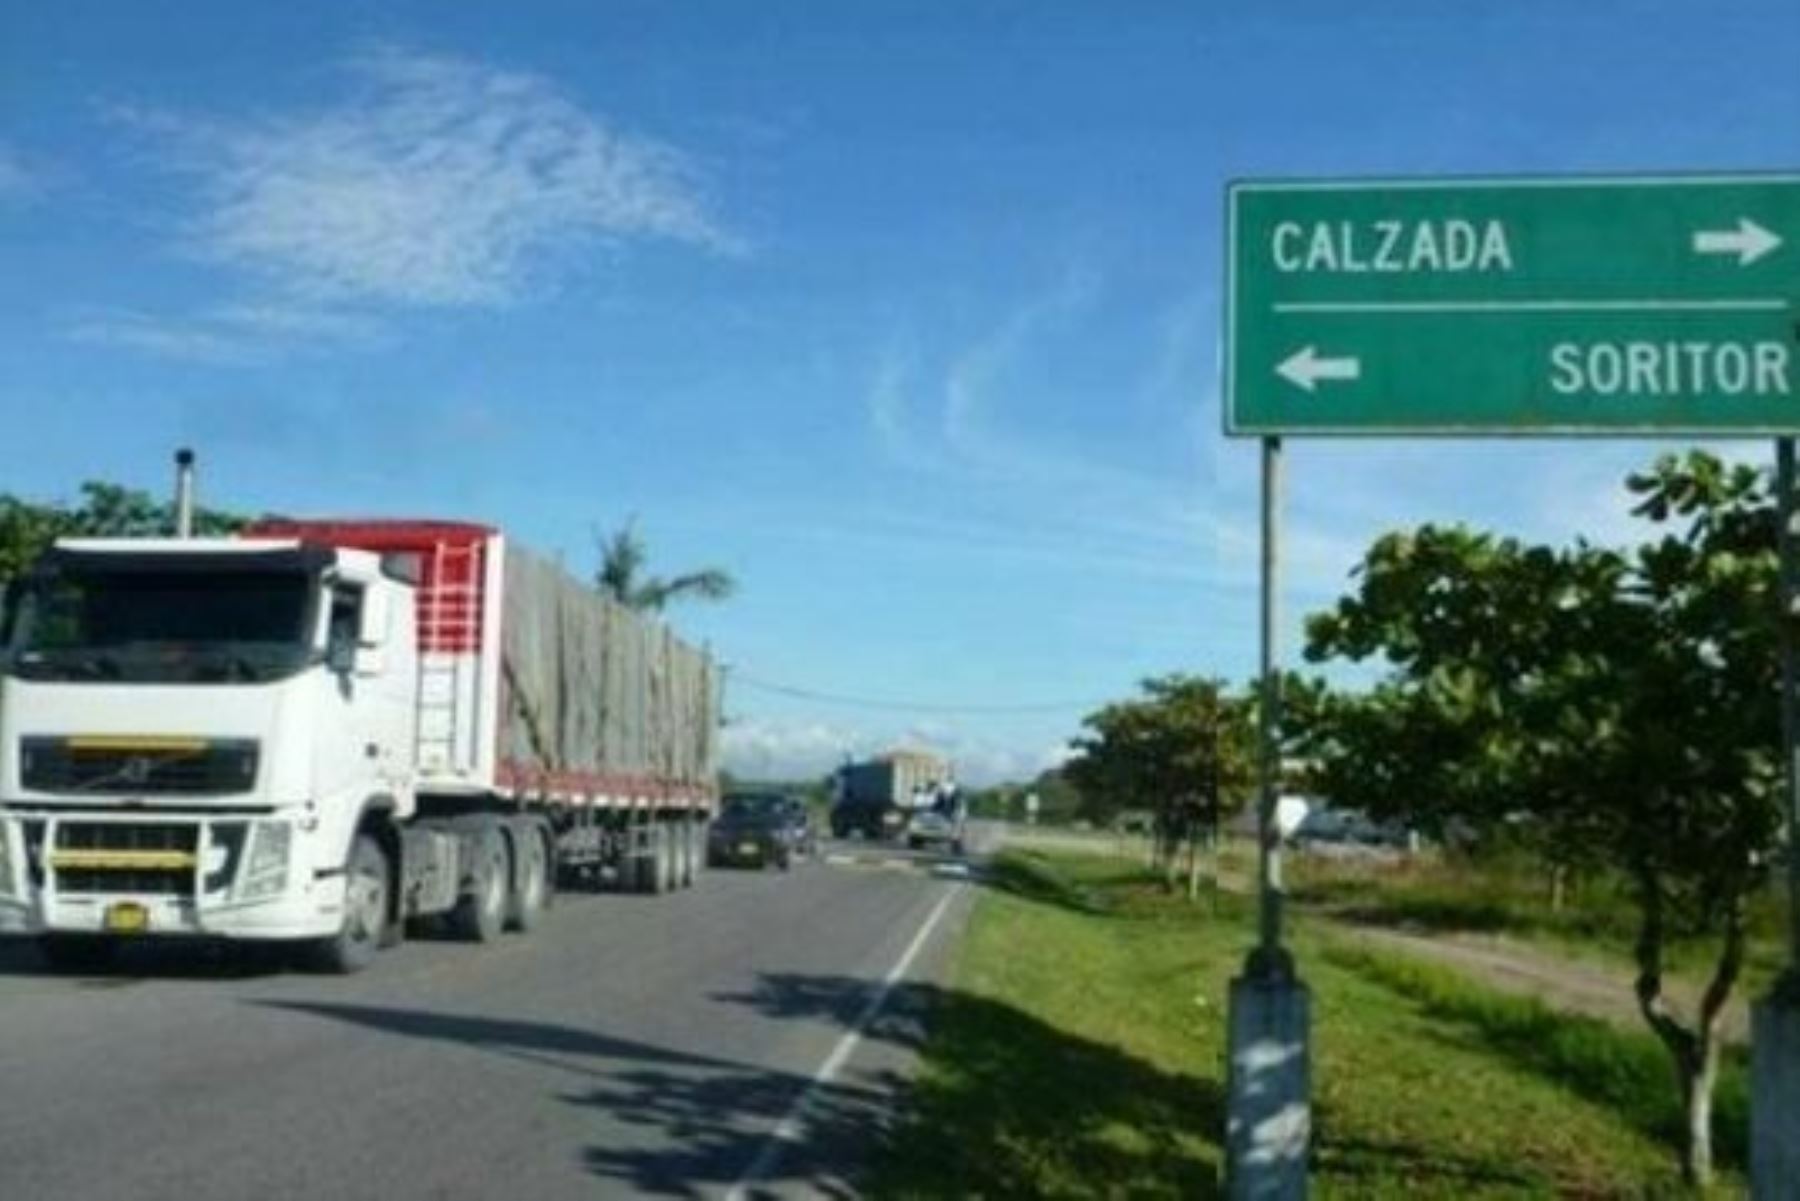 Carretera La Calzada-Soritor. Foto: Cortesía.